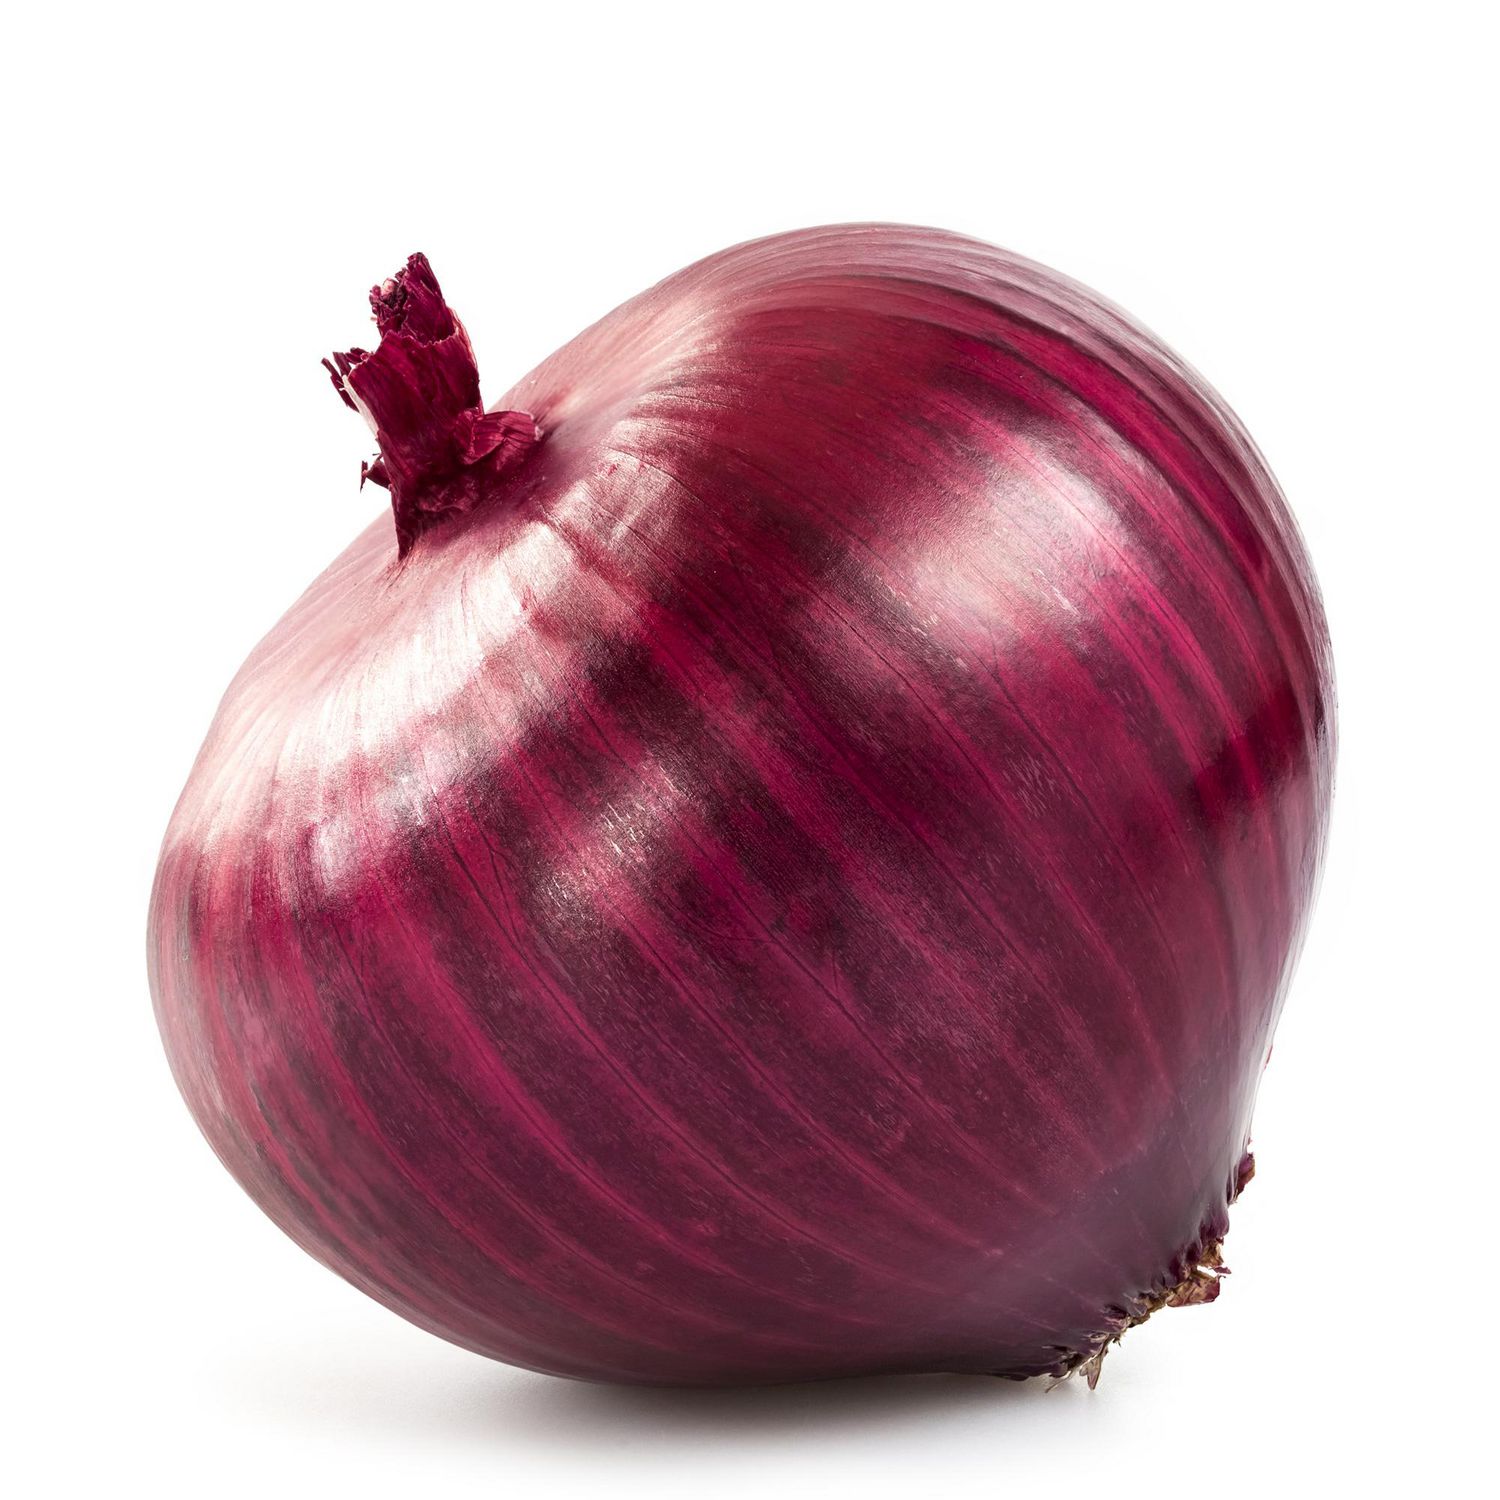 Live Onion